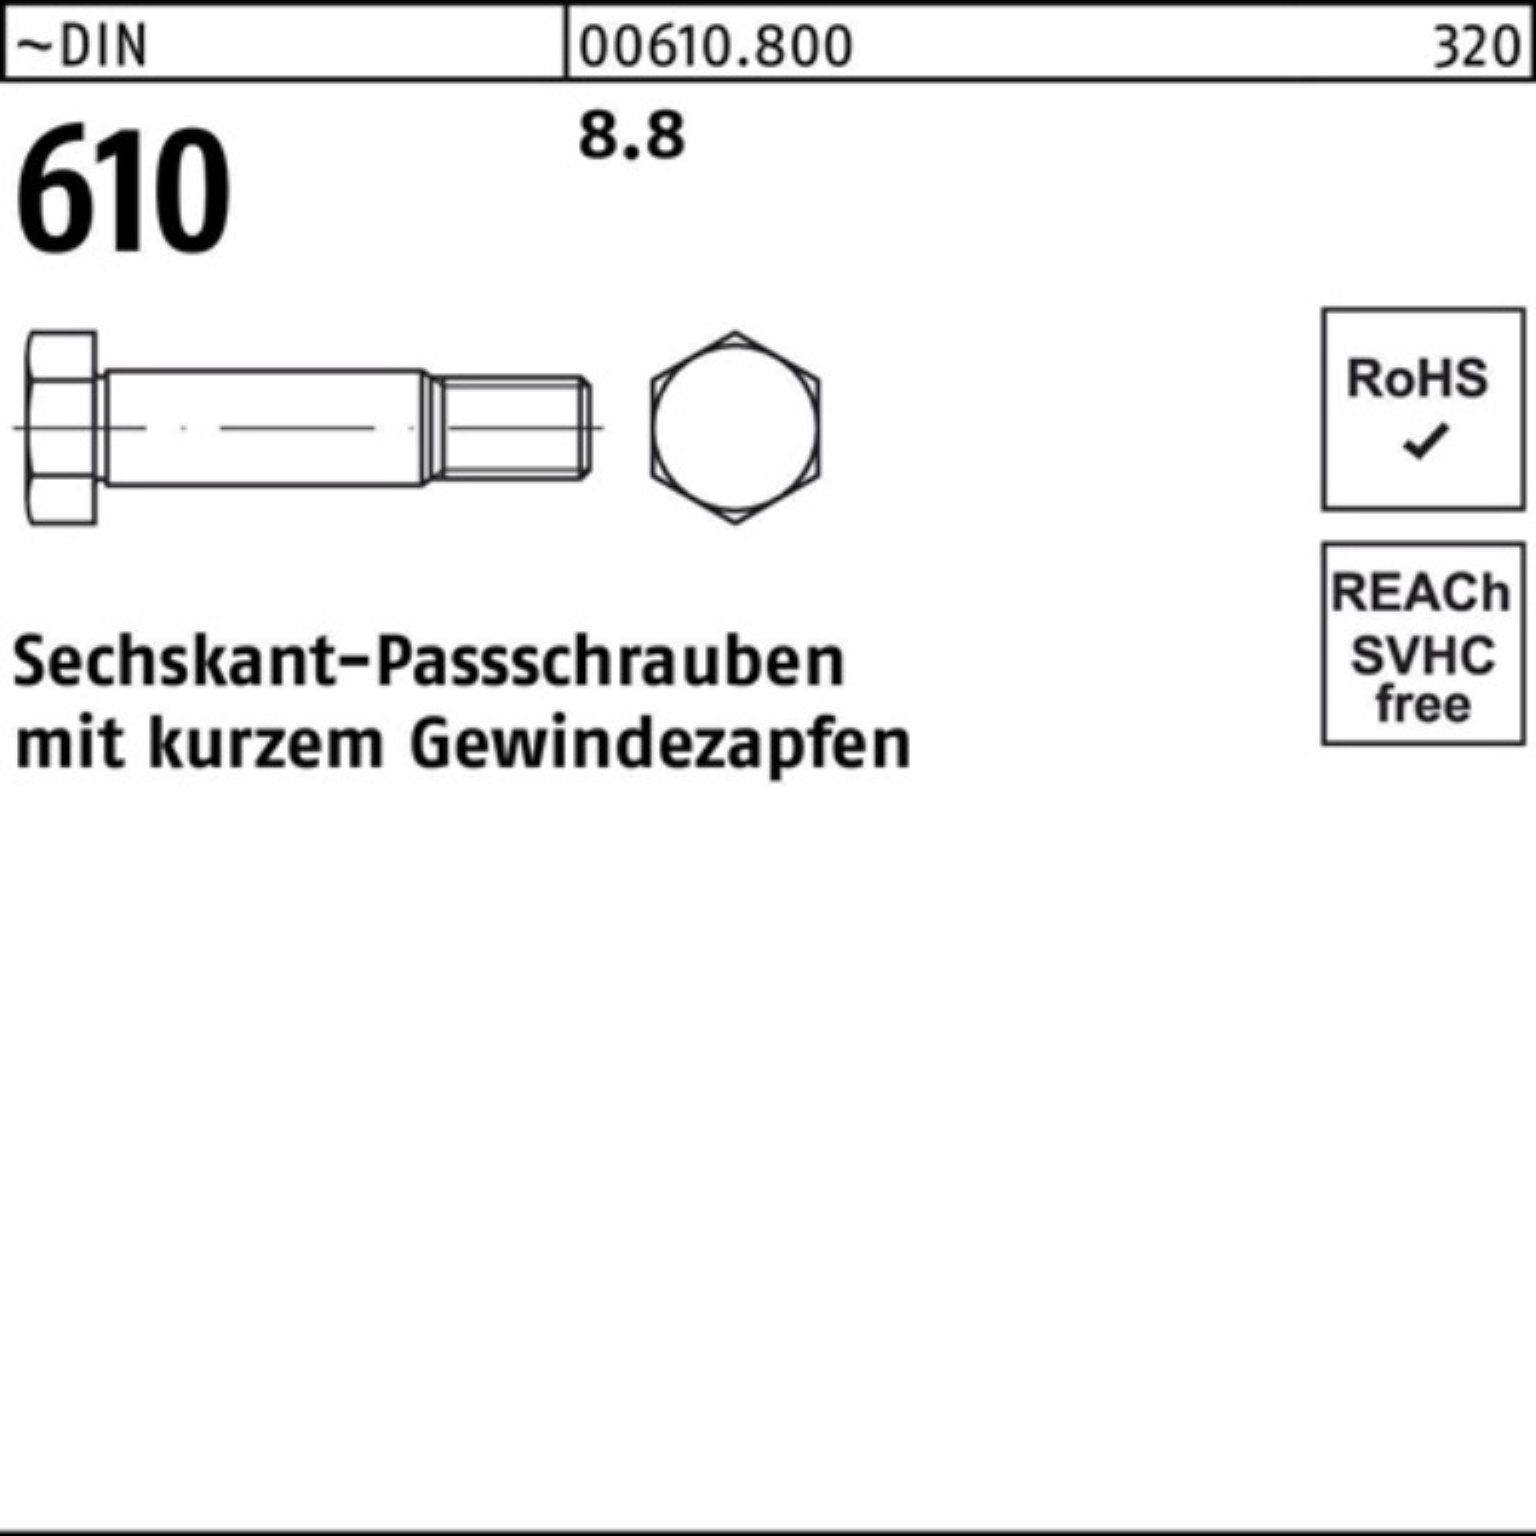 30 DIN 100er Gewindezapfen Pack Sechskantpassschraube Reyher M10x 610 kurzem Schraube